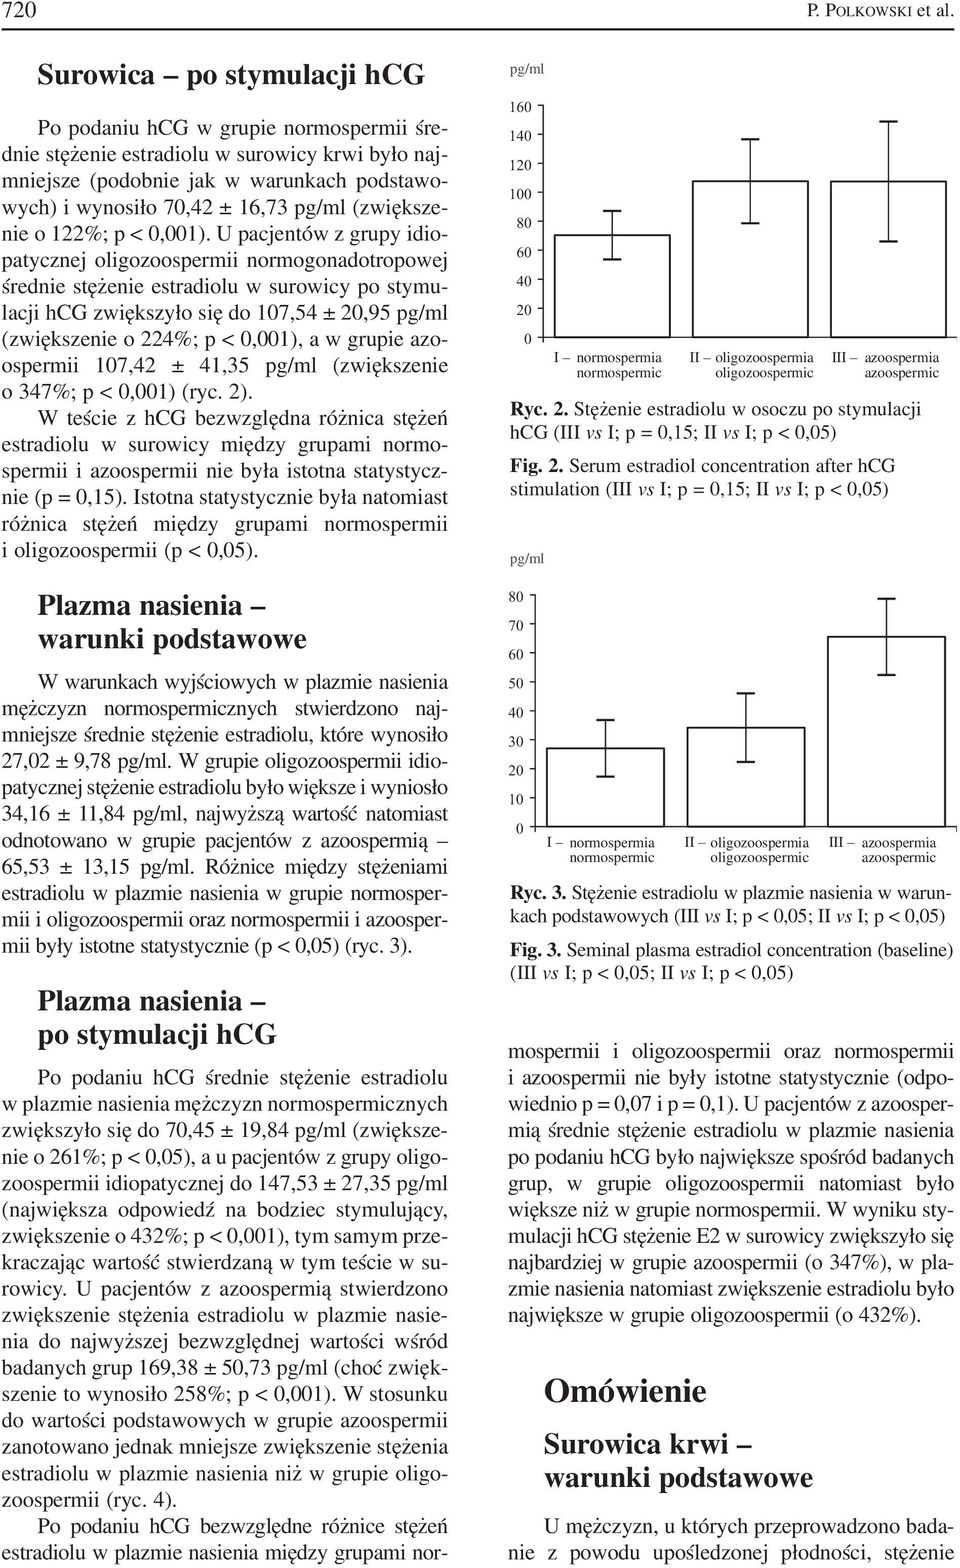 U pacjentów z grupy idio patycznej oligozoospermii normogonadotropowej średnie stężenie estradiolu w surowicy po stymu lacji hcg zwiększyło się do 17,54 ± 2,95 (zwiększenie o 224%; p <,1), a w grupie